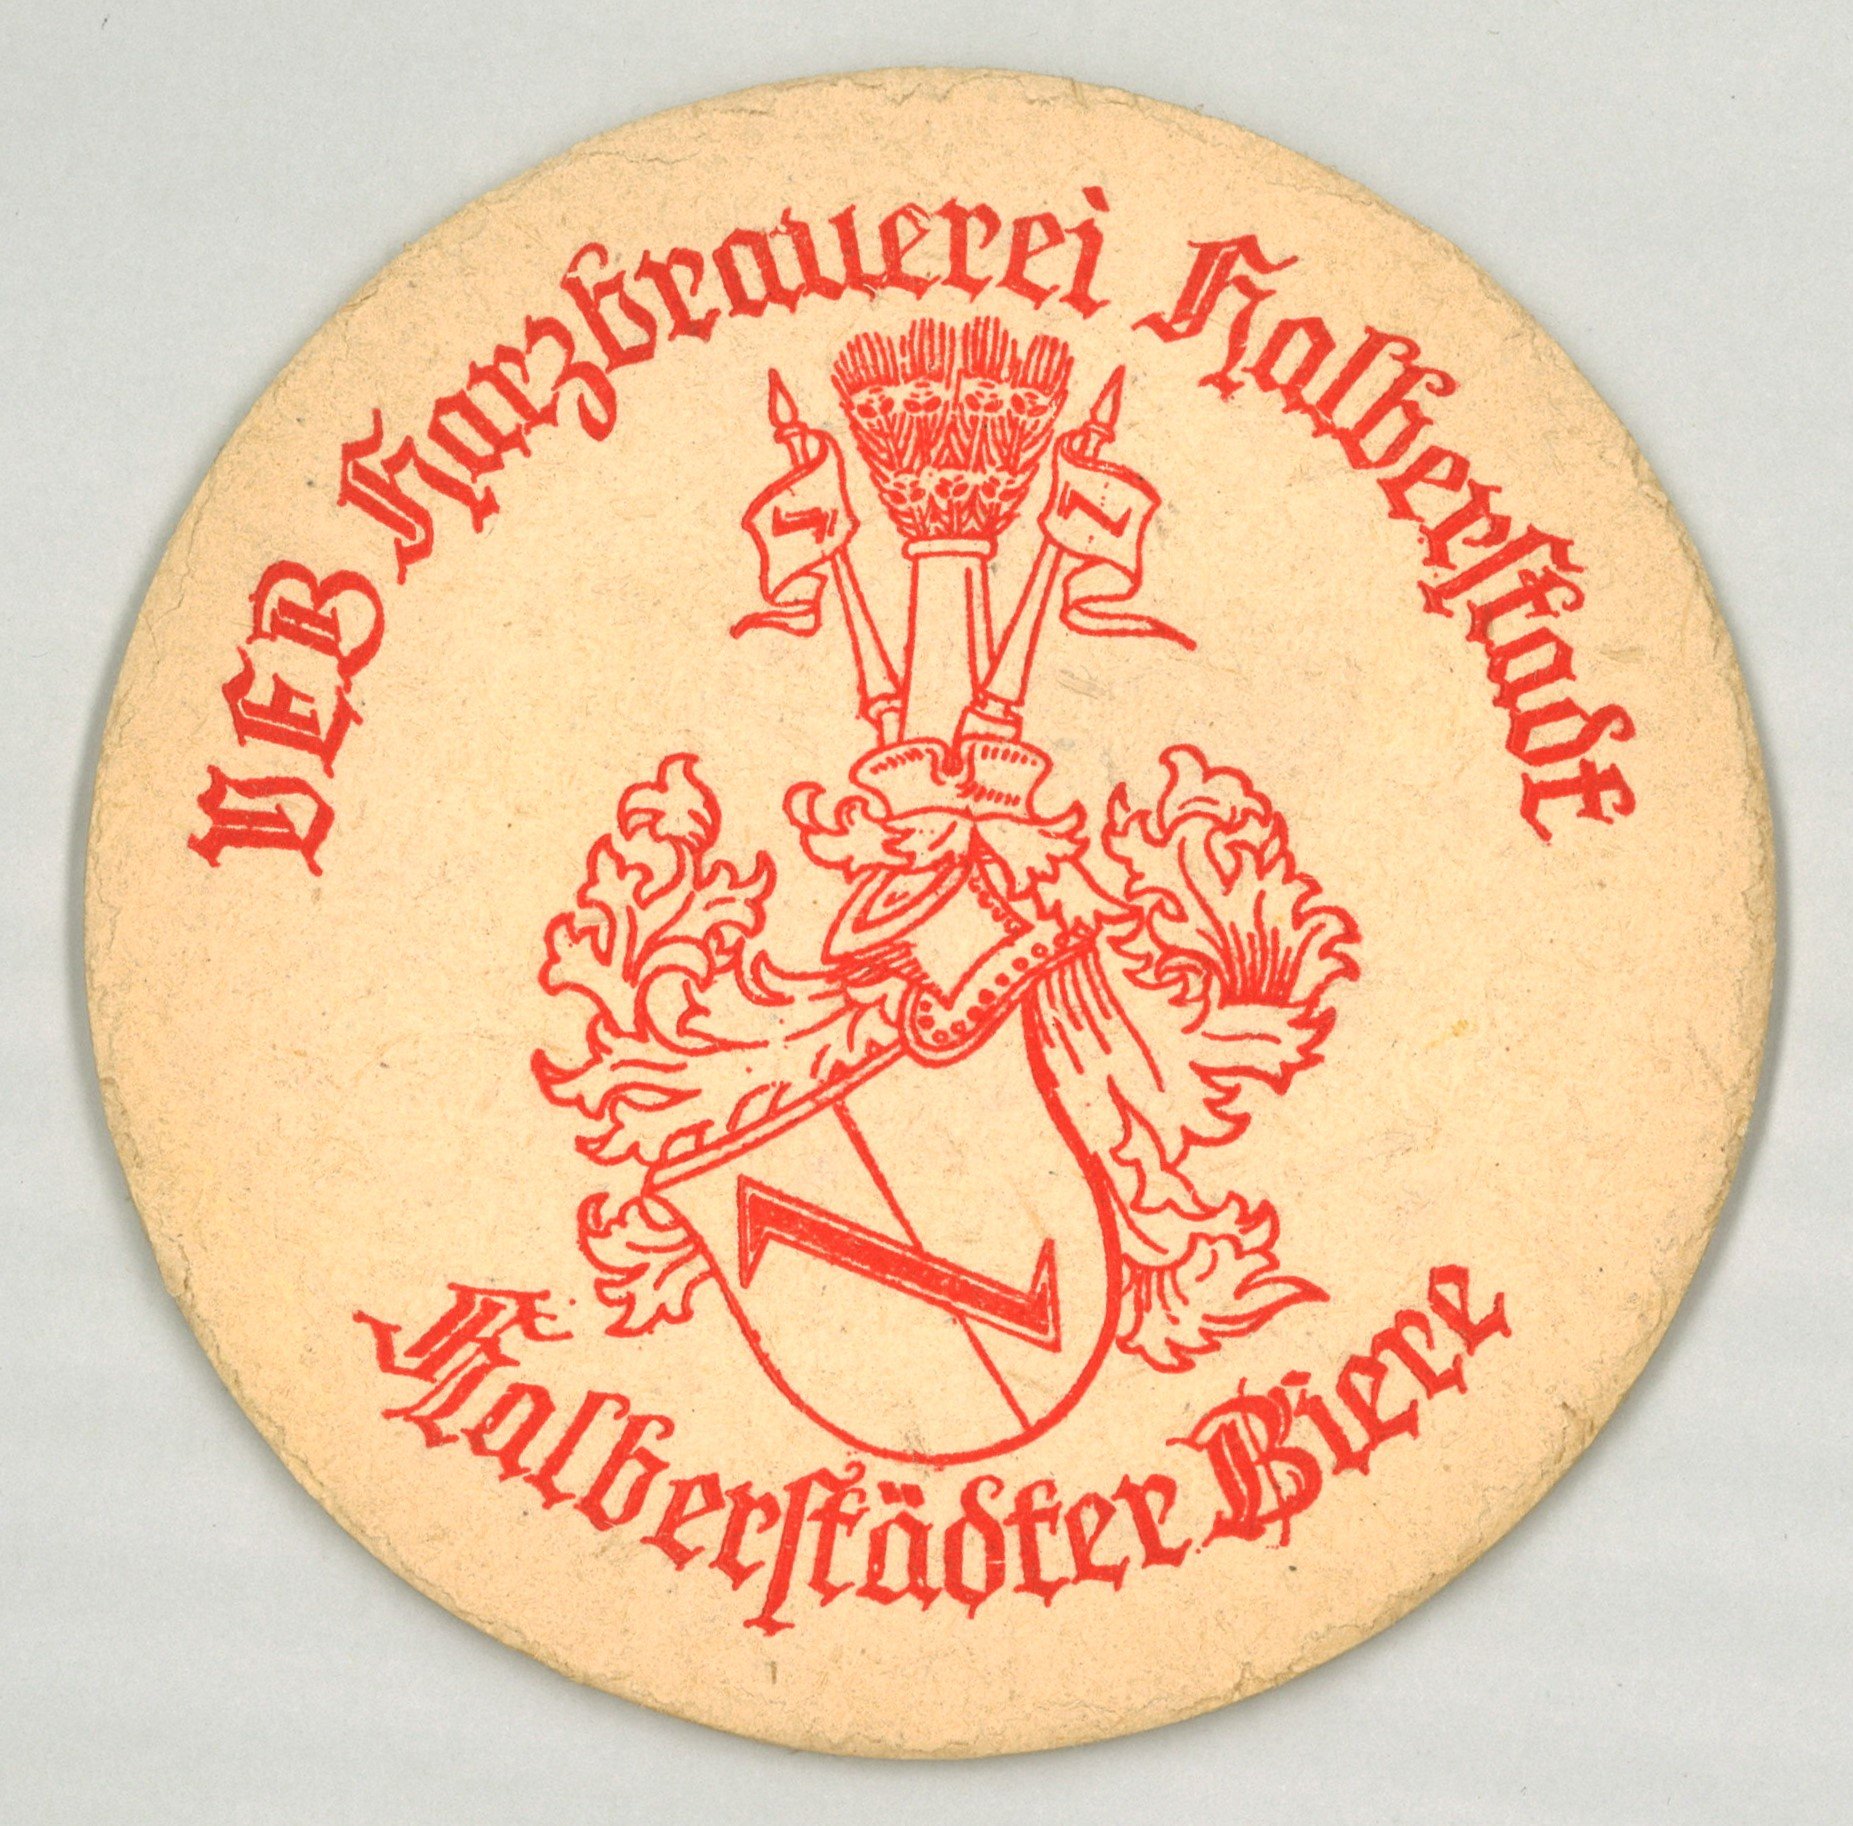 Halberstadt: VEB Harzbrauerei Halberstadt (Landesgeschichtliche Vereinigung für die Mark Brandenburg e.V., Archiv CC BY)